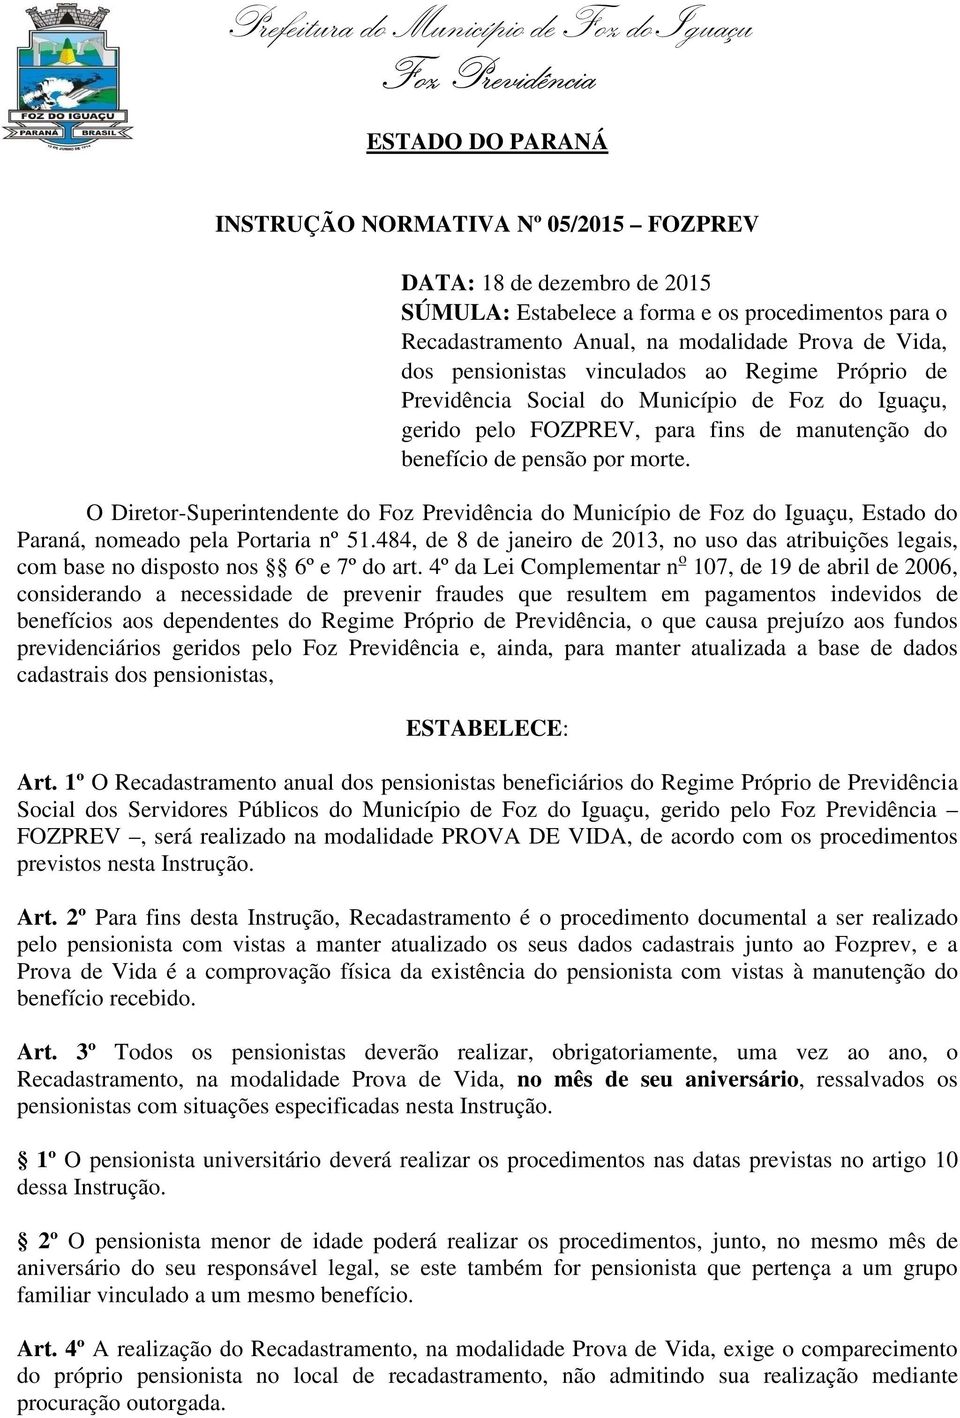 O Diretor-Superintendente do do Município de Foz do Iguaçu, Estado do Paraná, nomeado pela Portaria nº 51.